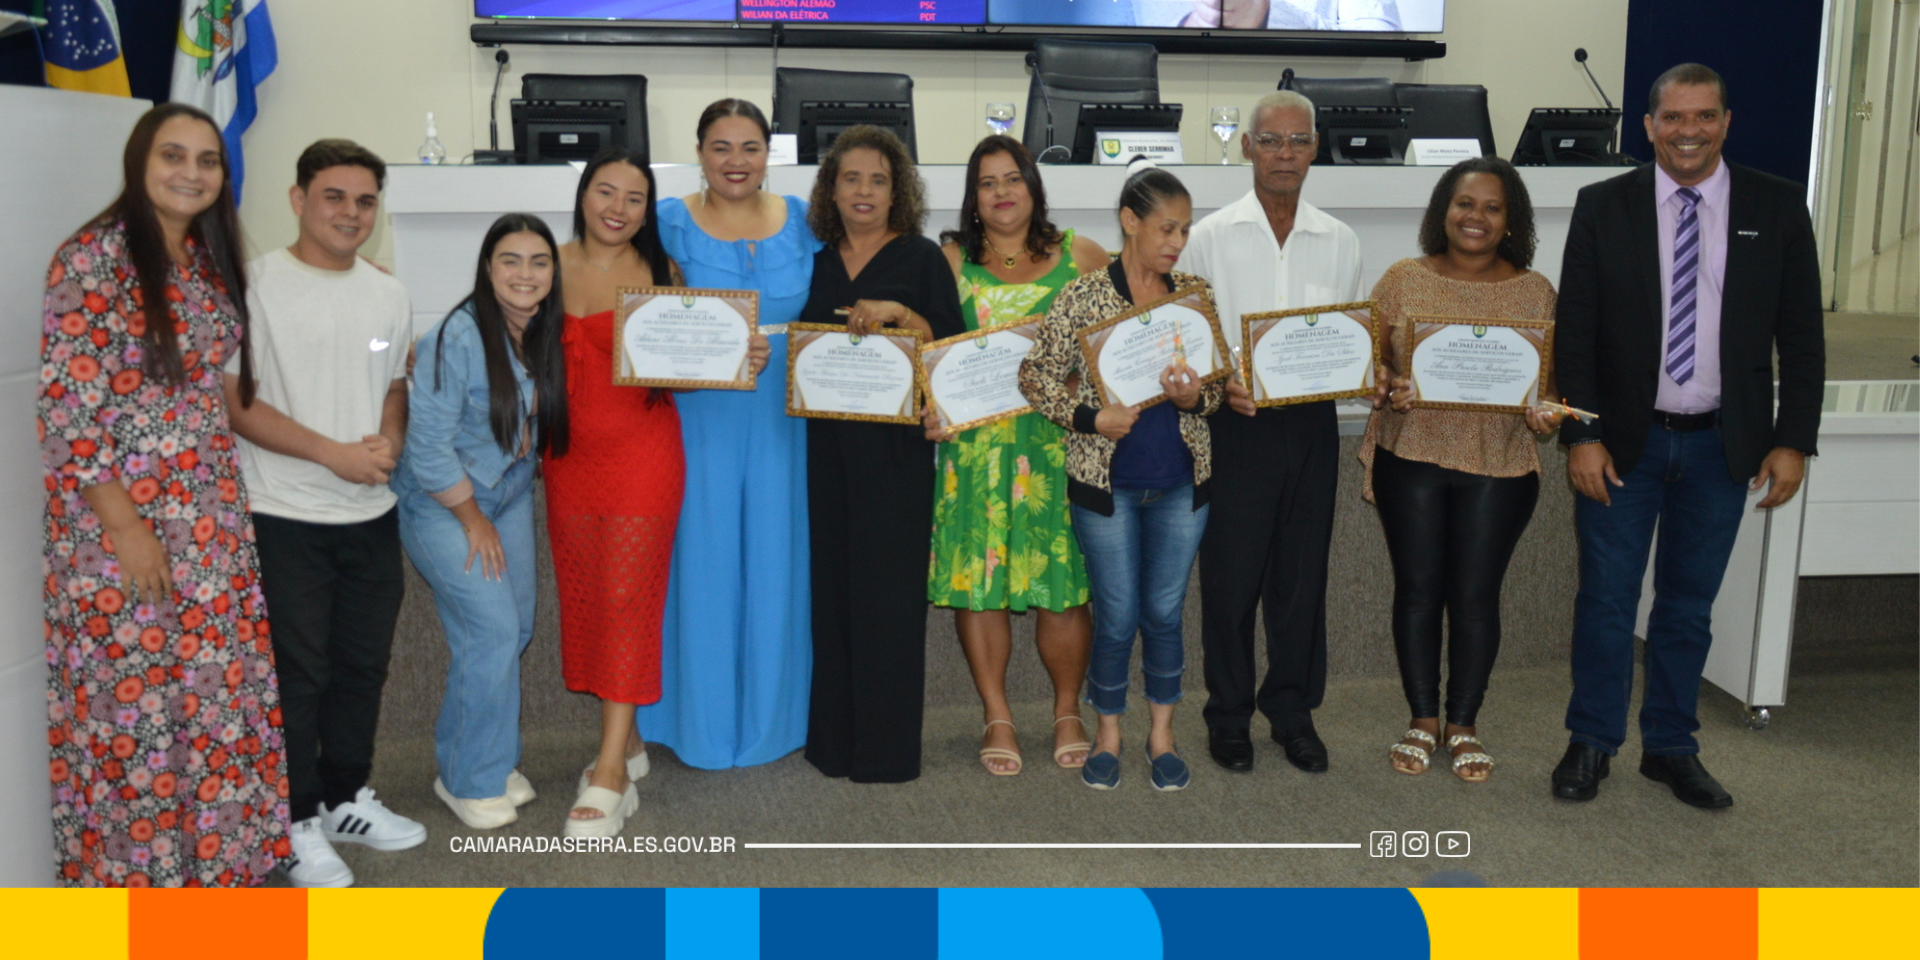 Foto da notícia: Auxiliares de Serviços Gerais recebem homenagem no Plenário da Câmara da Serra